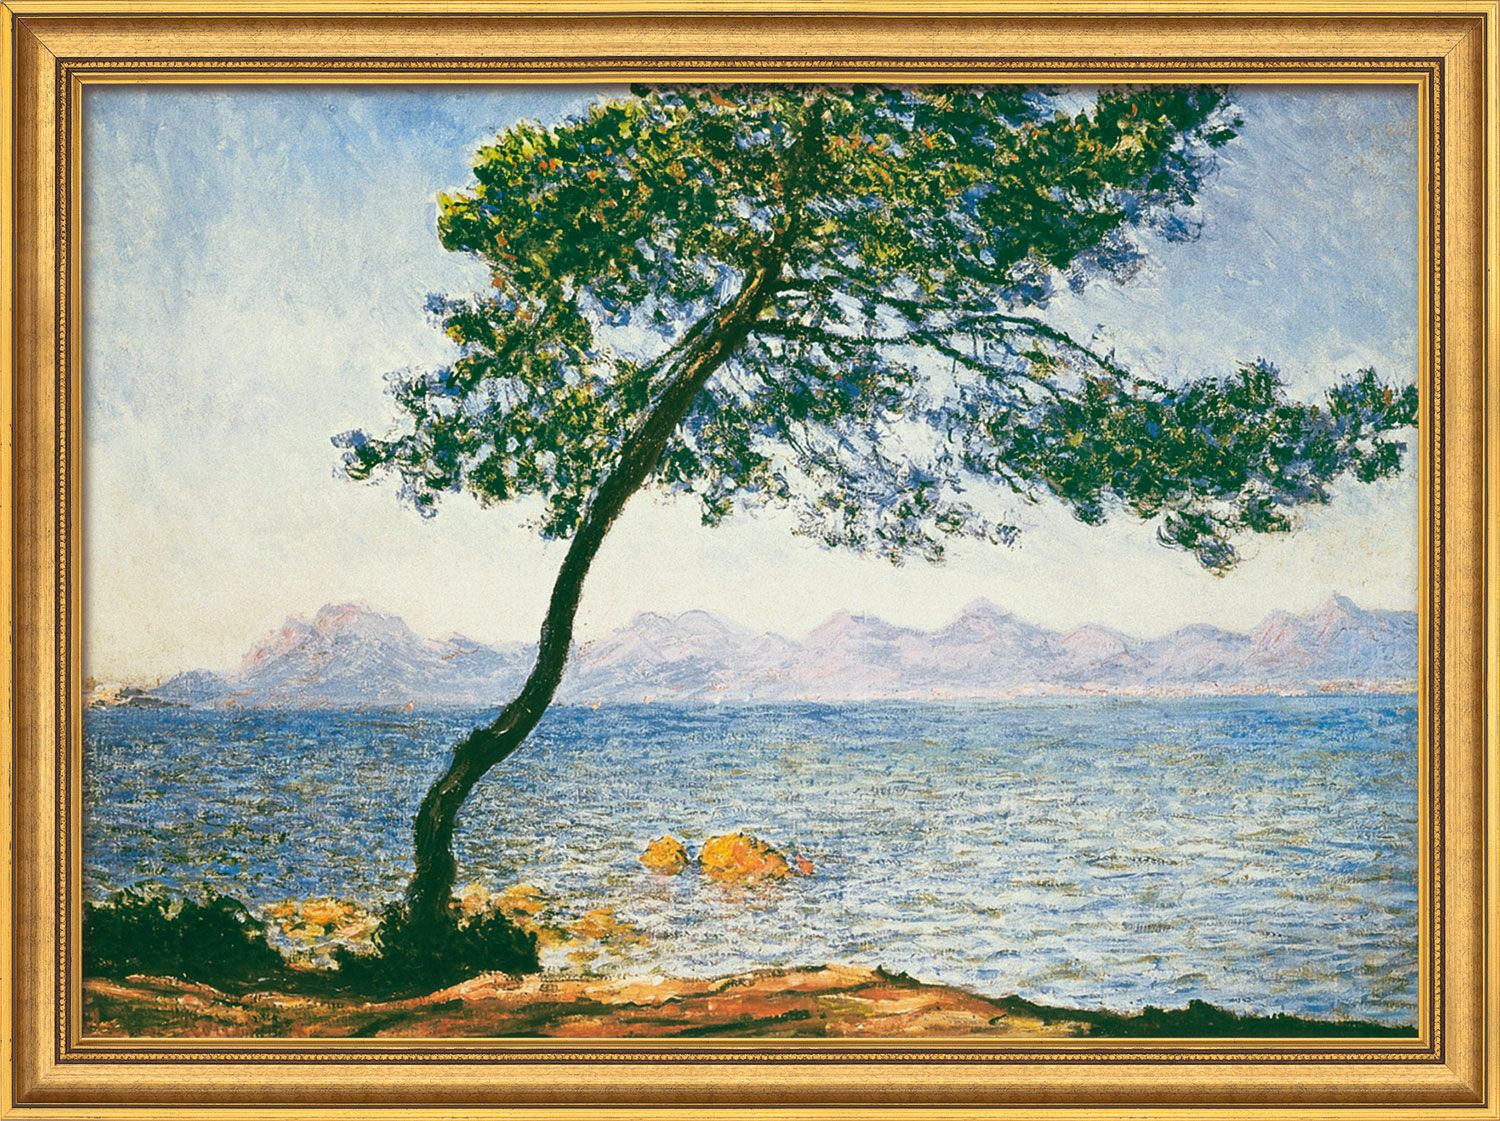 Tableau "Antibes" (1888), encadré von Claude Monet